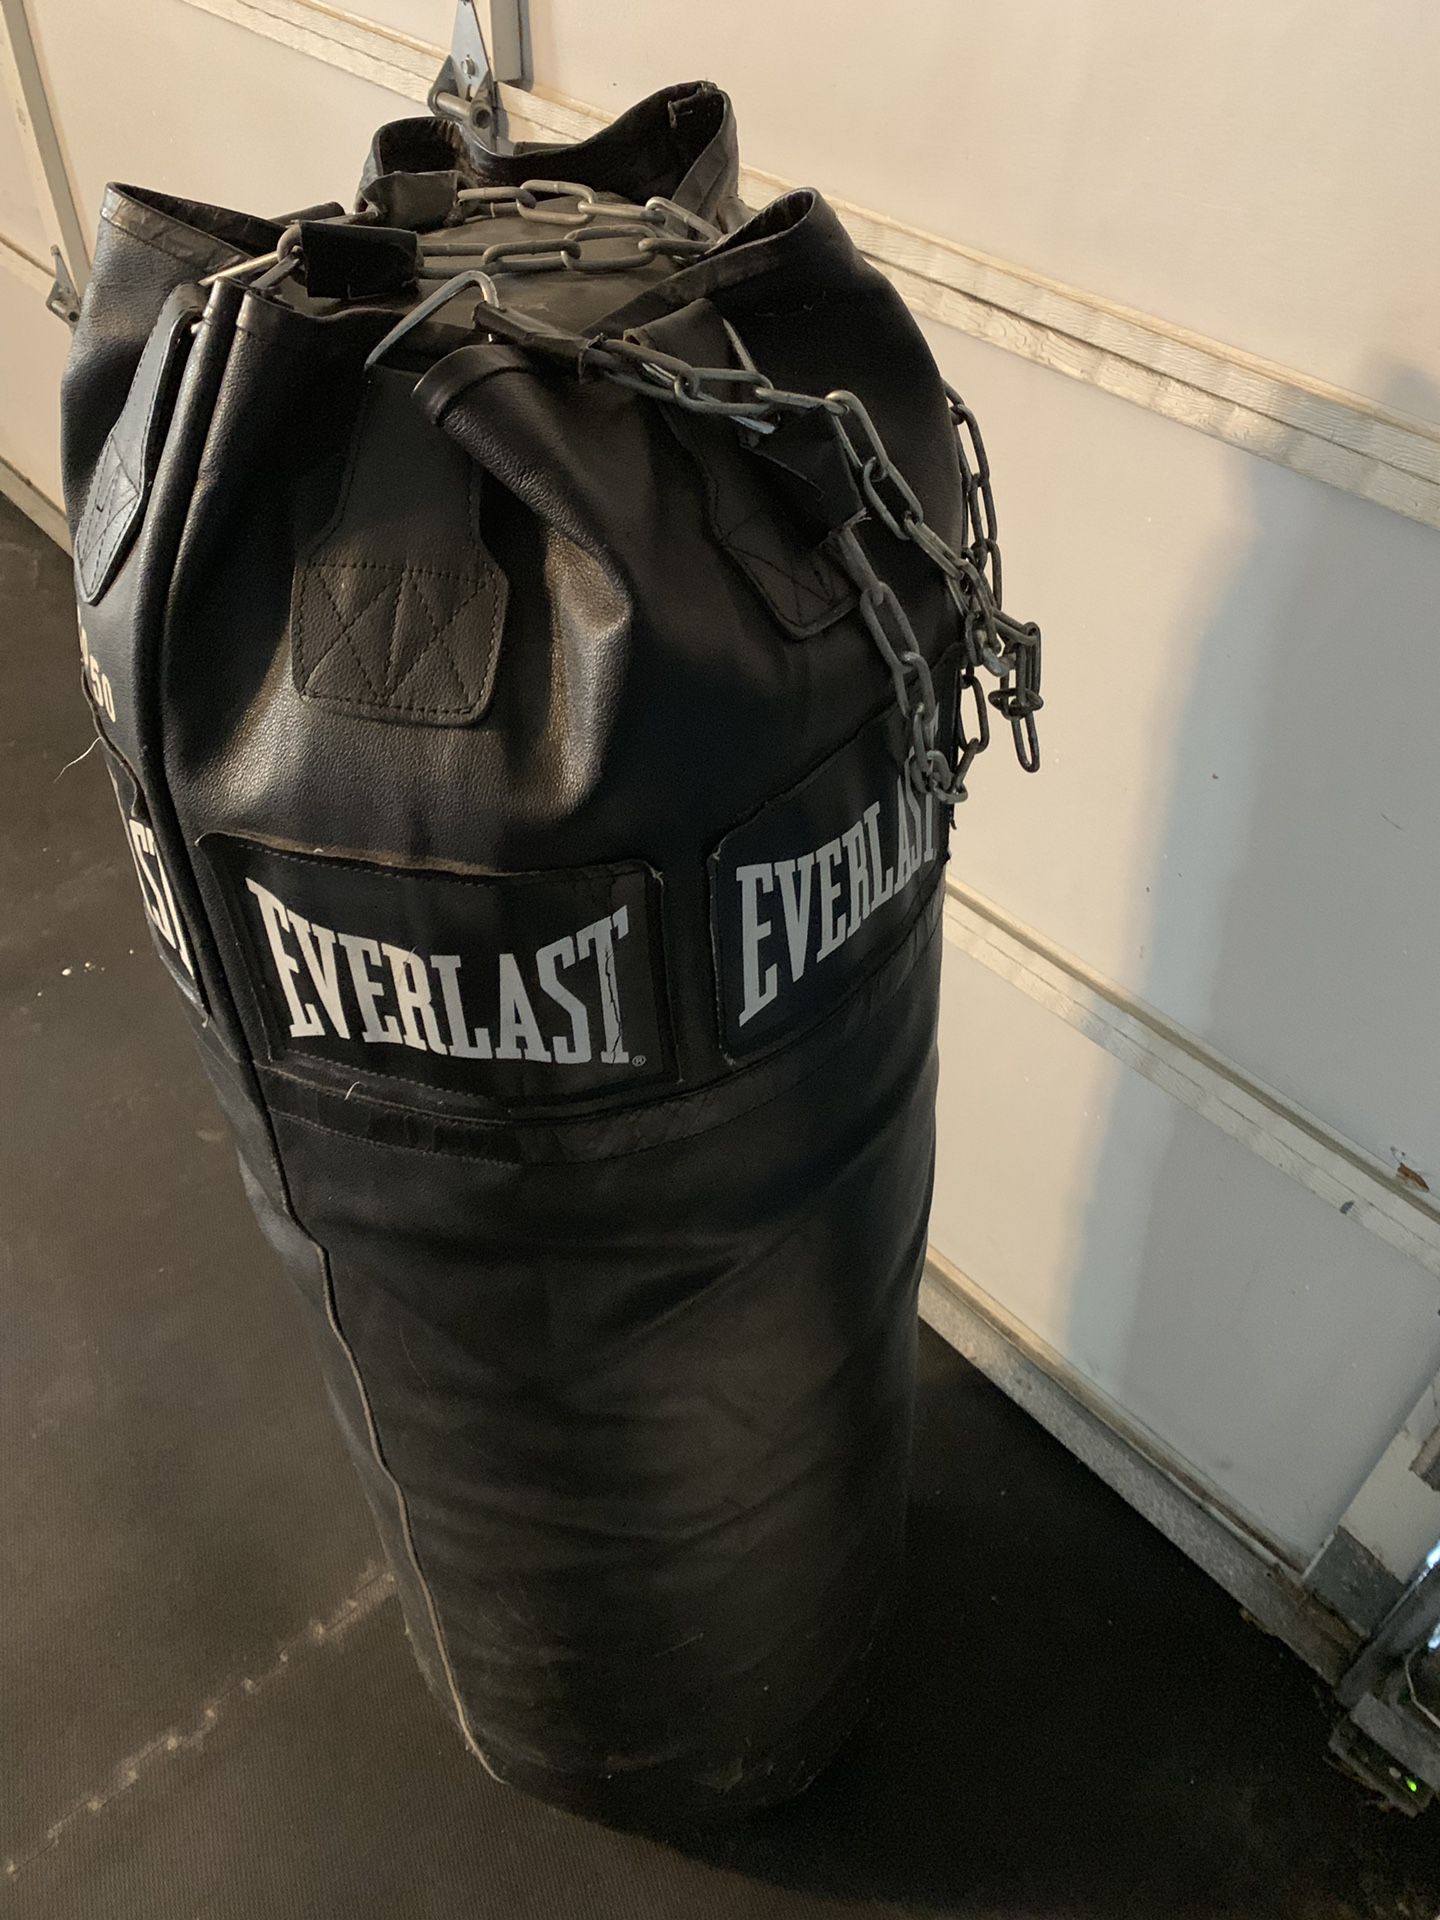 Boxing bag - professional punching bag